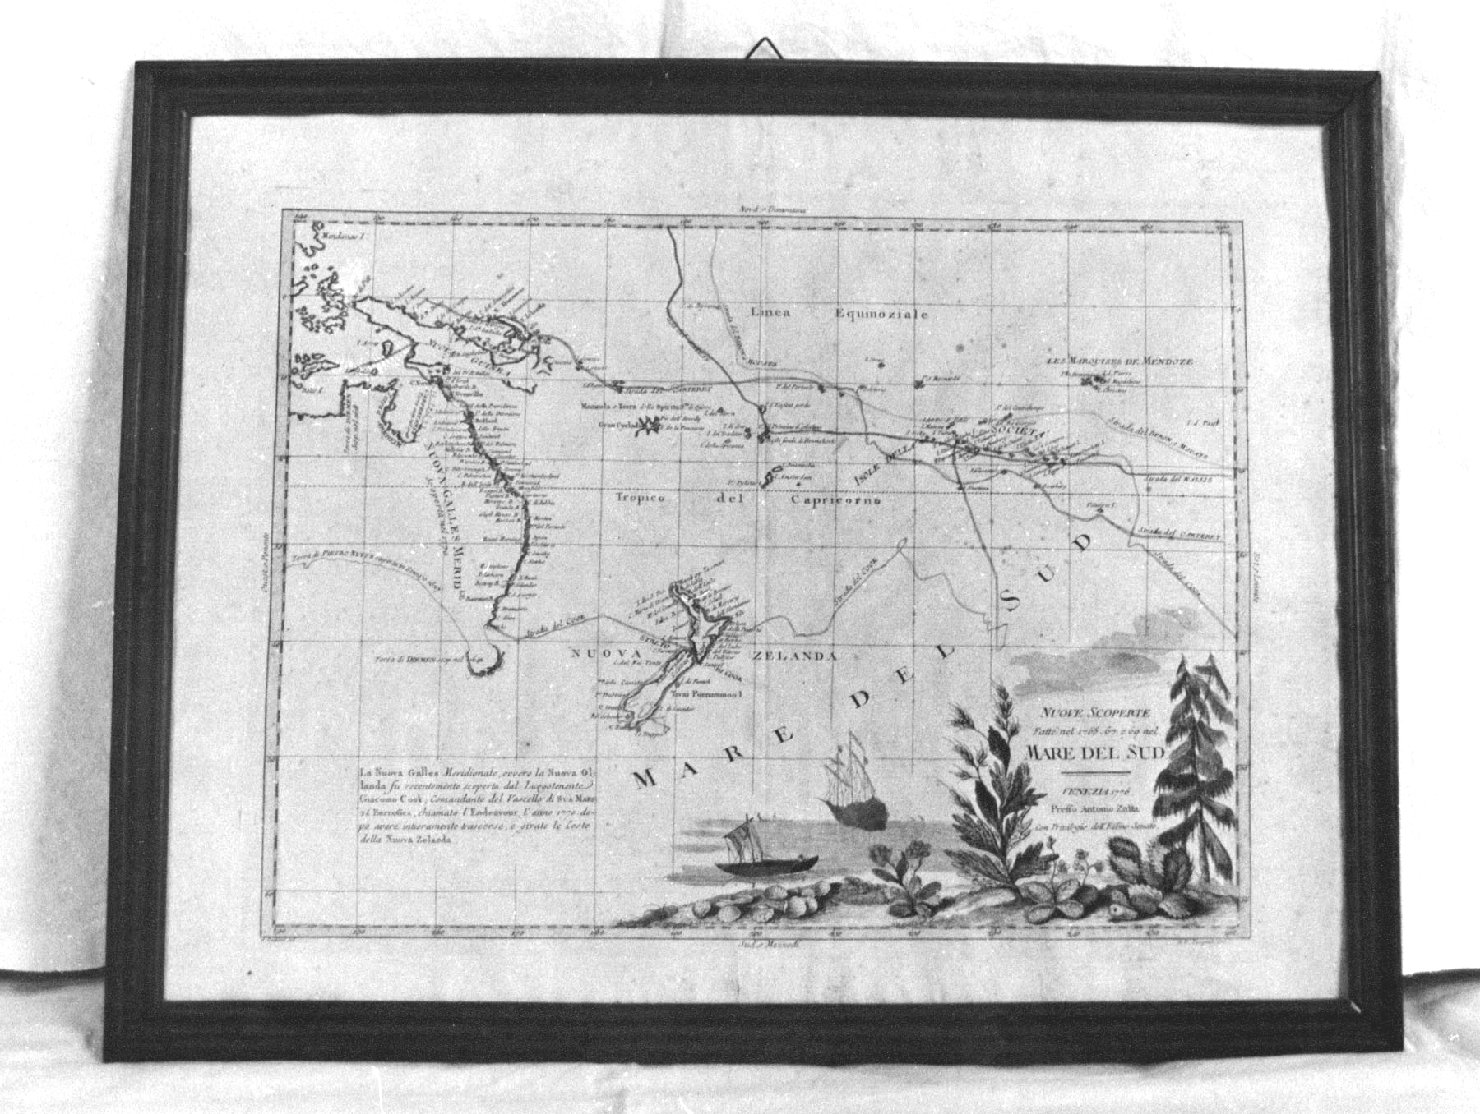 Nuove scoperte fatte nel 1765.67 e 69 nel mare del Sud, geografia (stampa) di Zuliani Giuliano (sec. XVIII)